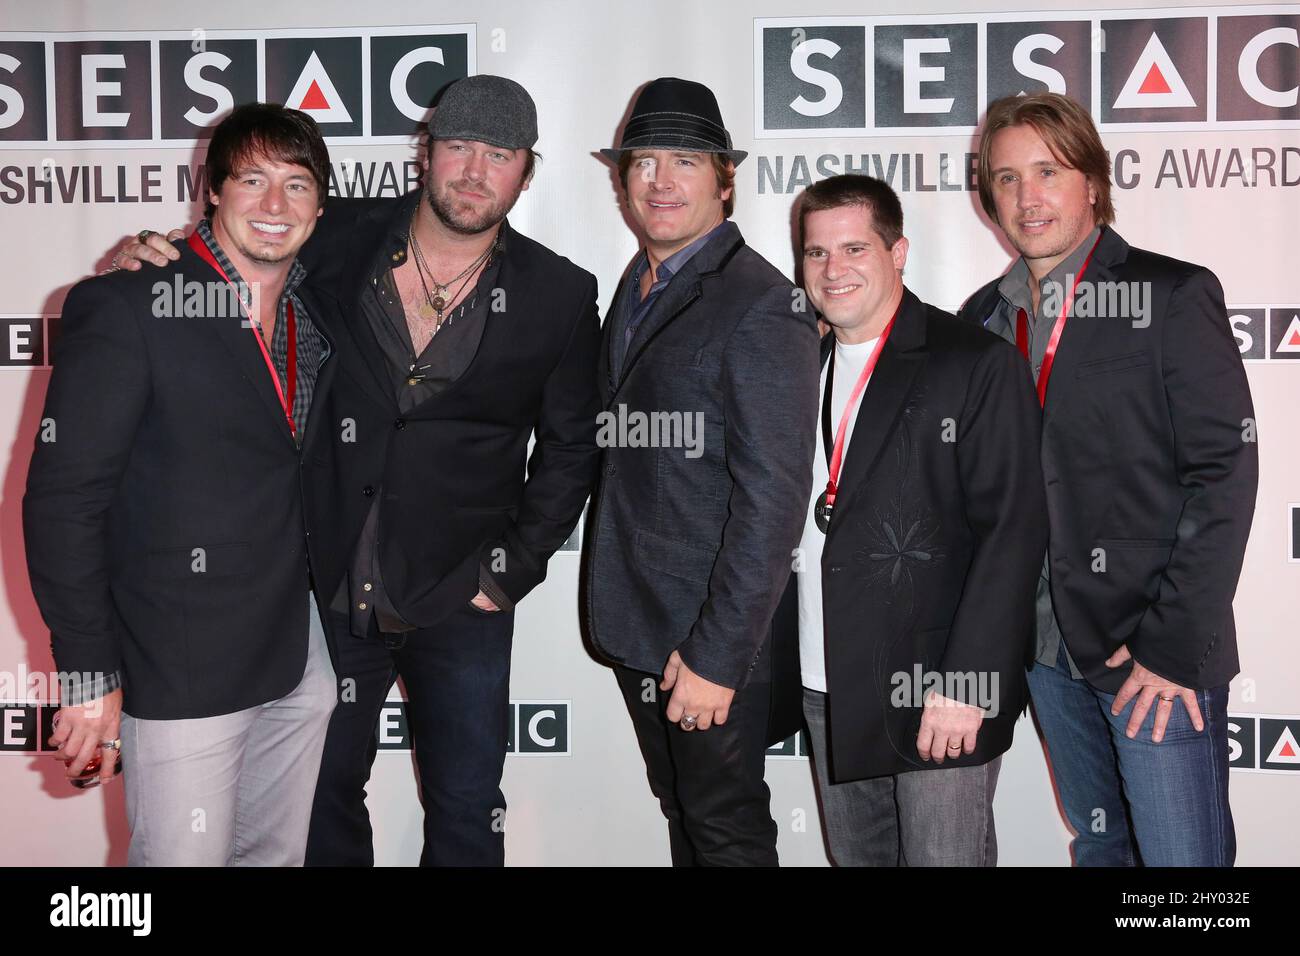 Jonathan Jackson,Lee Brice,Jerrod Niemann,Jamie Johnson,Lance Miller attend the 2012 SESAC Nashville Music Awards held at the Pinnacle, Nashville. Stock Photo